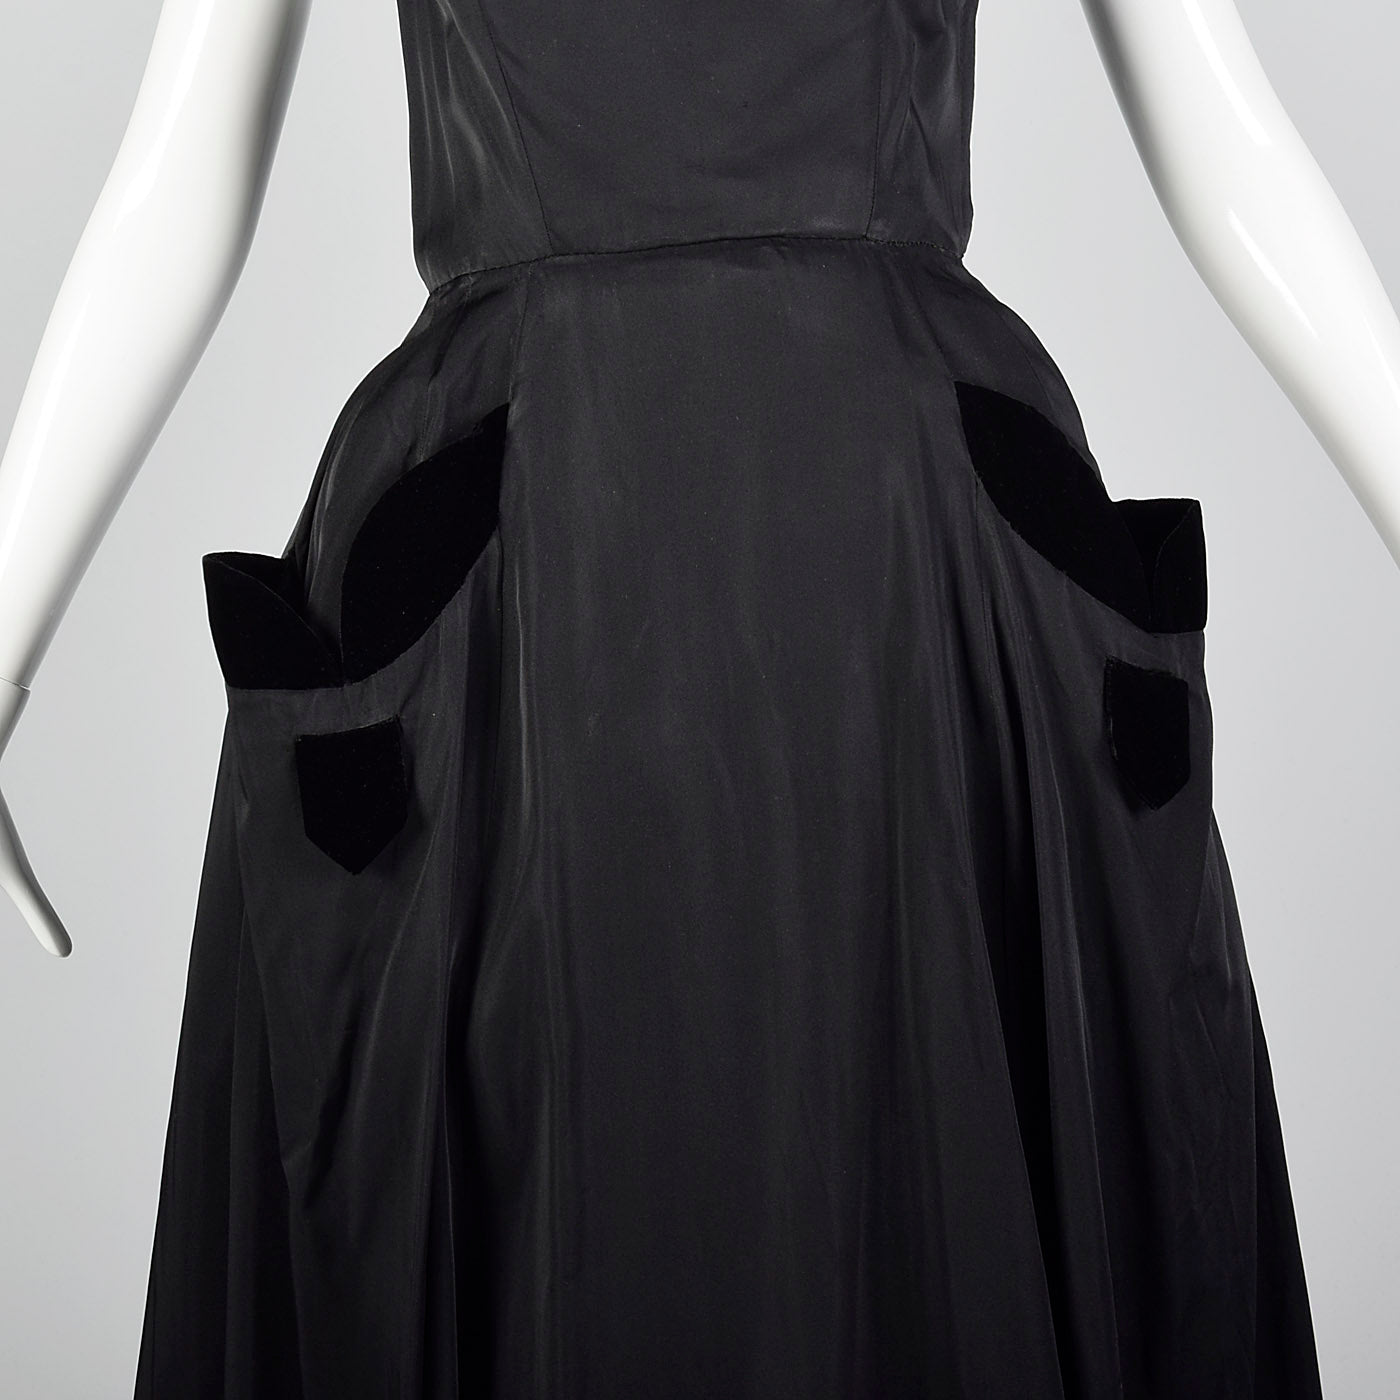 1950s Black Full Length Gown with Velvet Trim